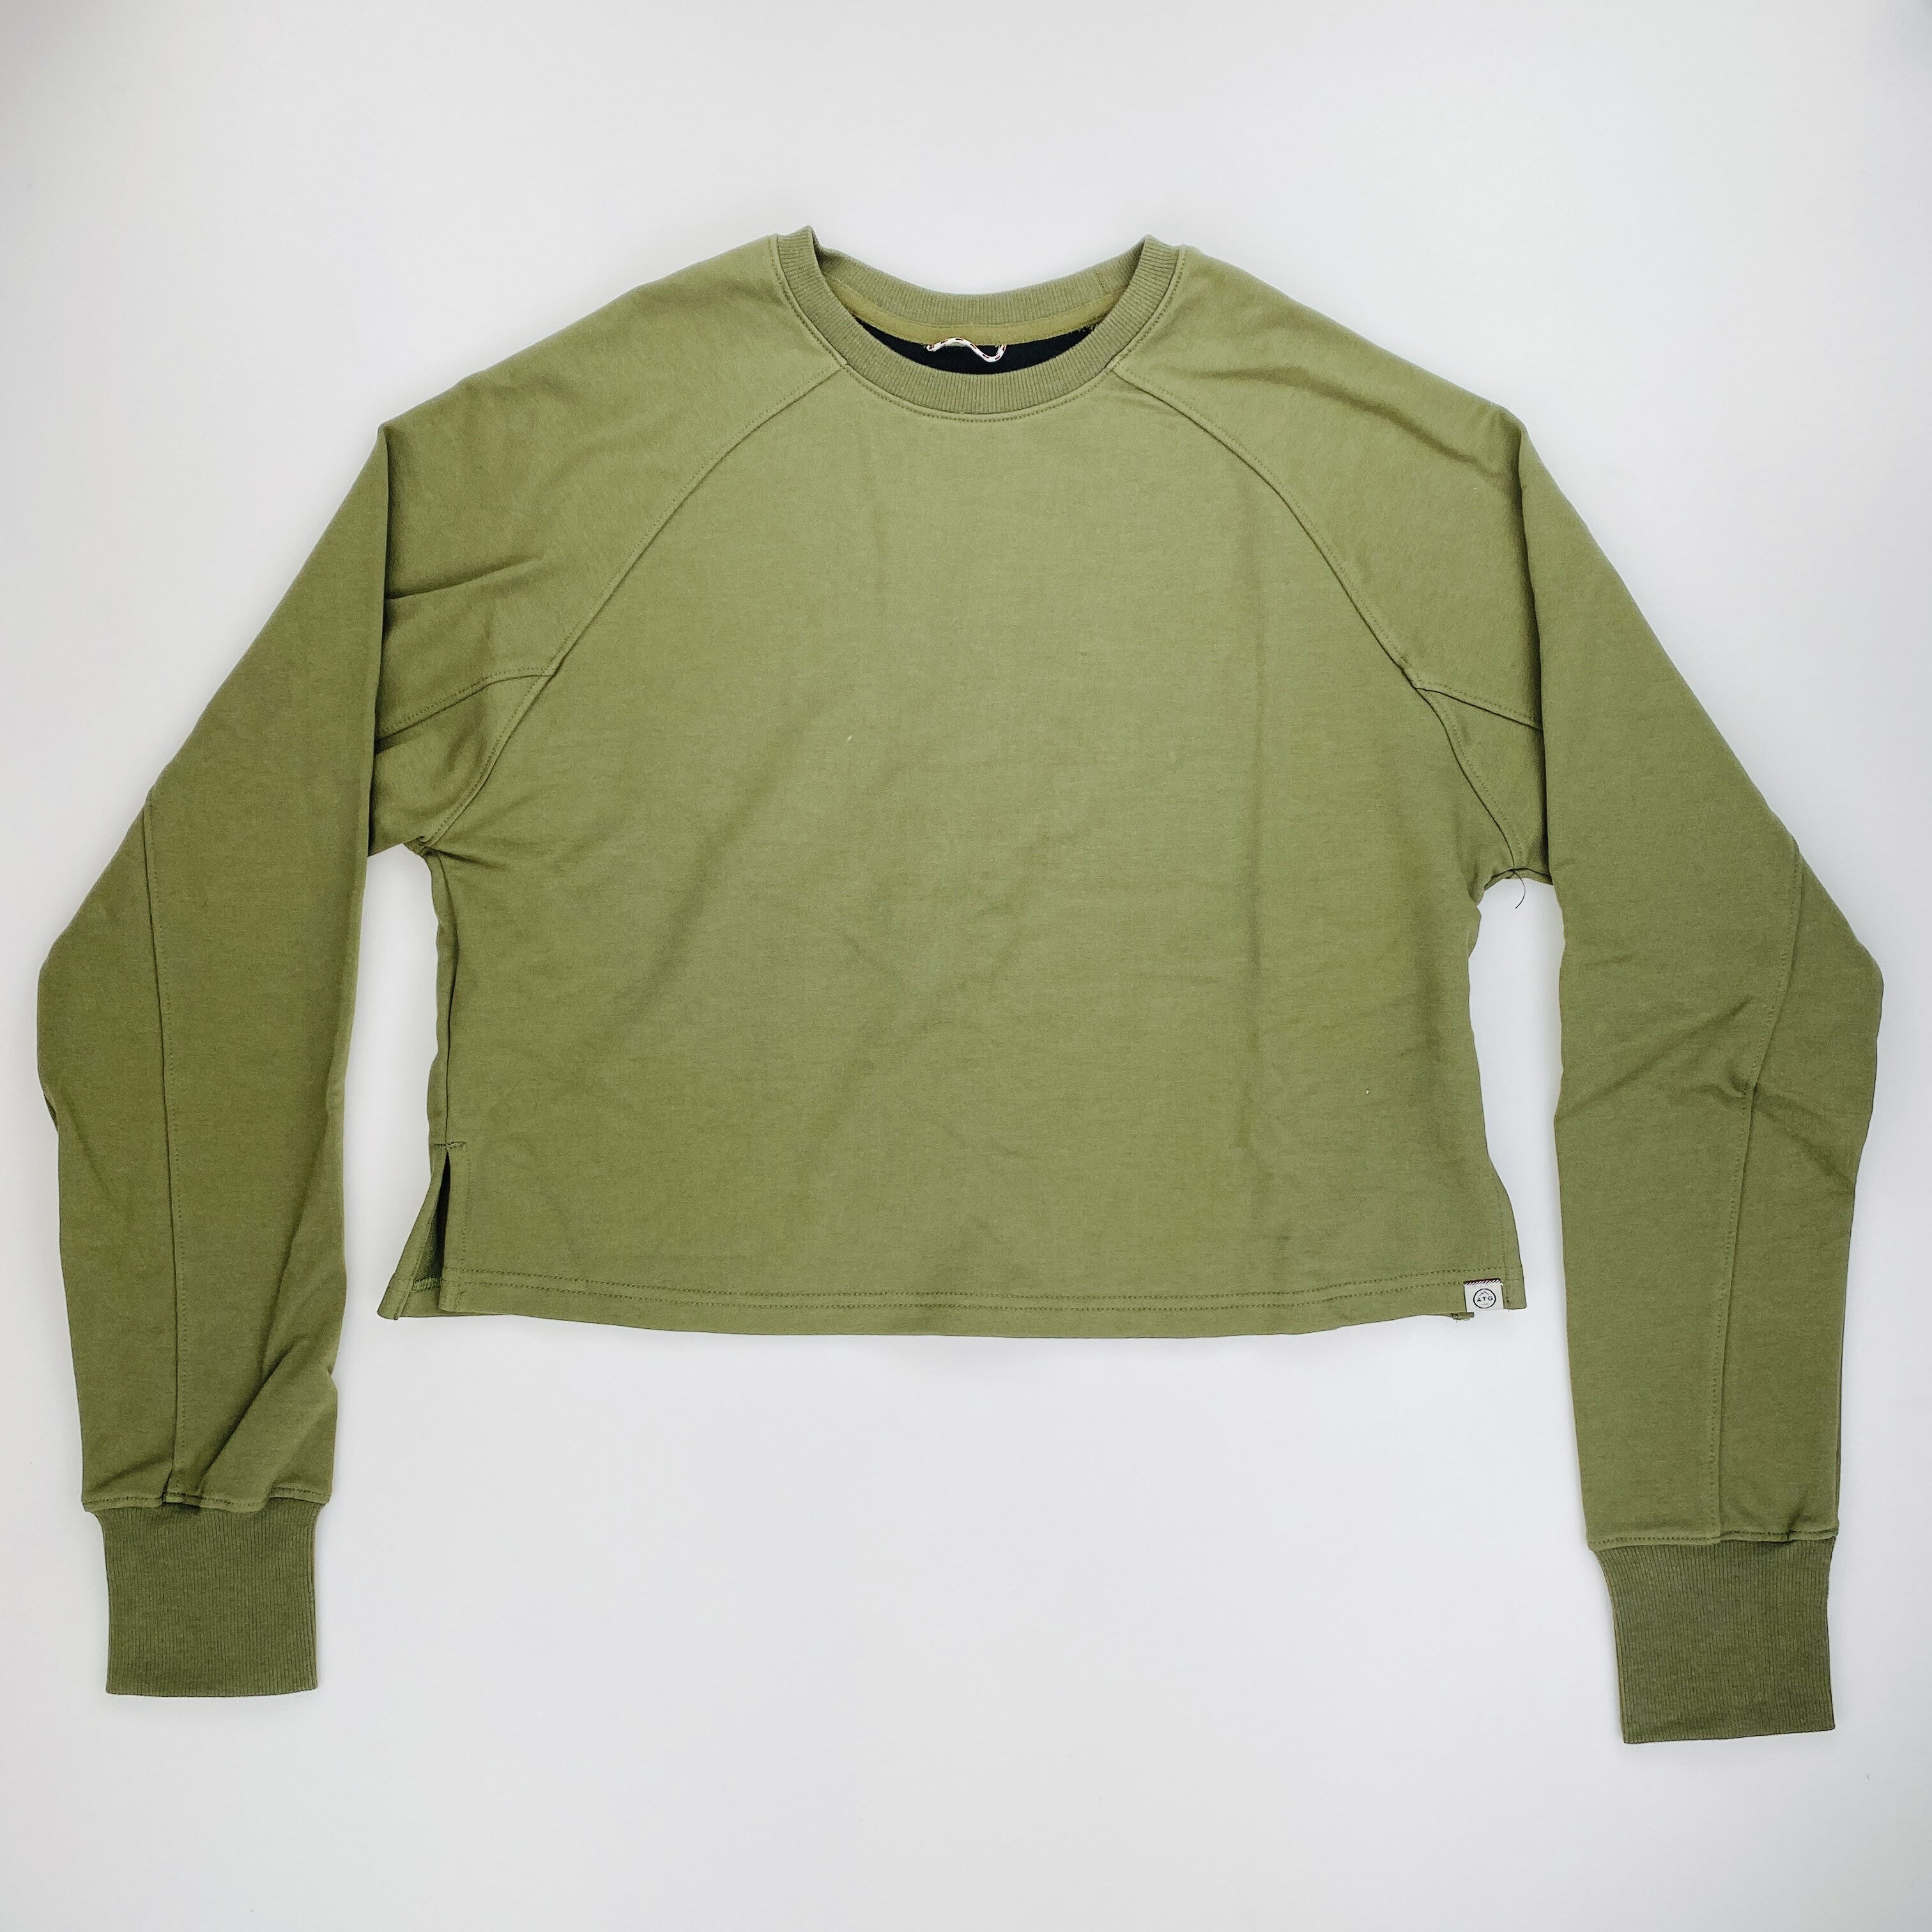 Wrangler Cropped Sweatshirt - Seconde main Sweatshirt femme - Vert olive - S | Hardloop